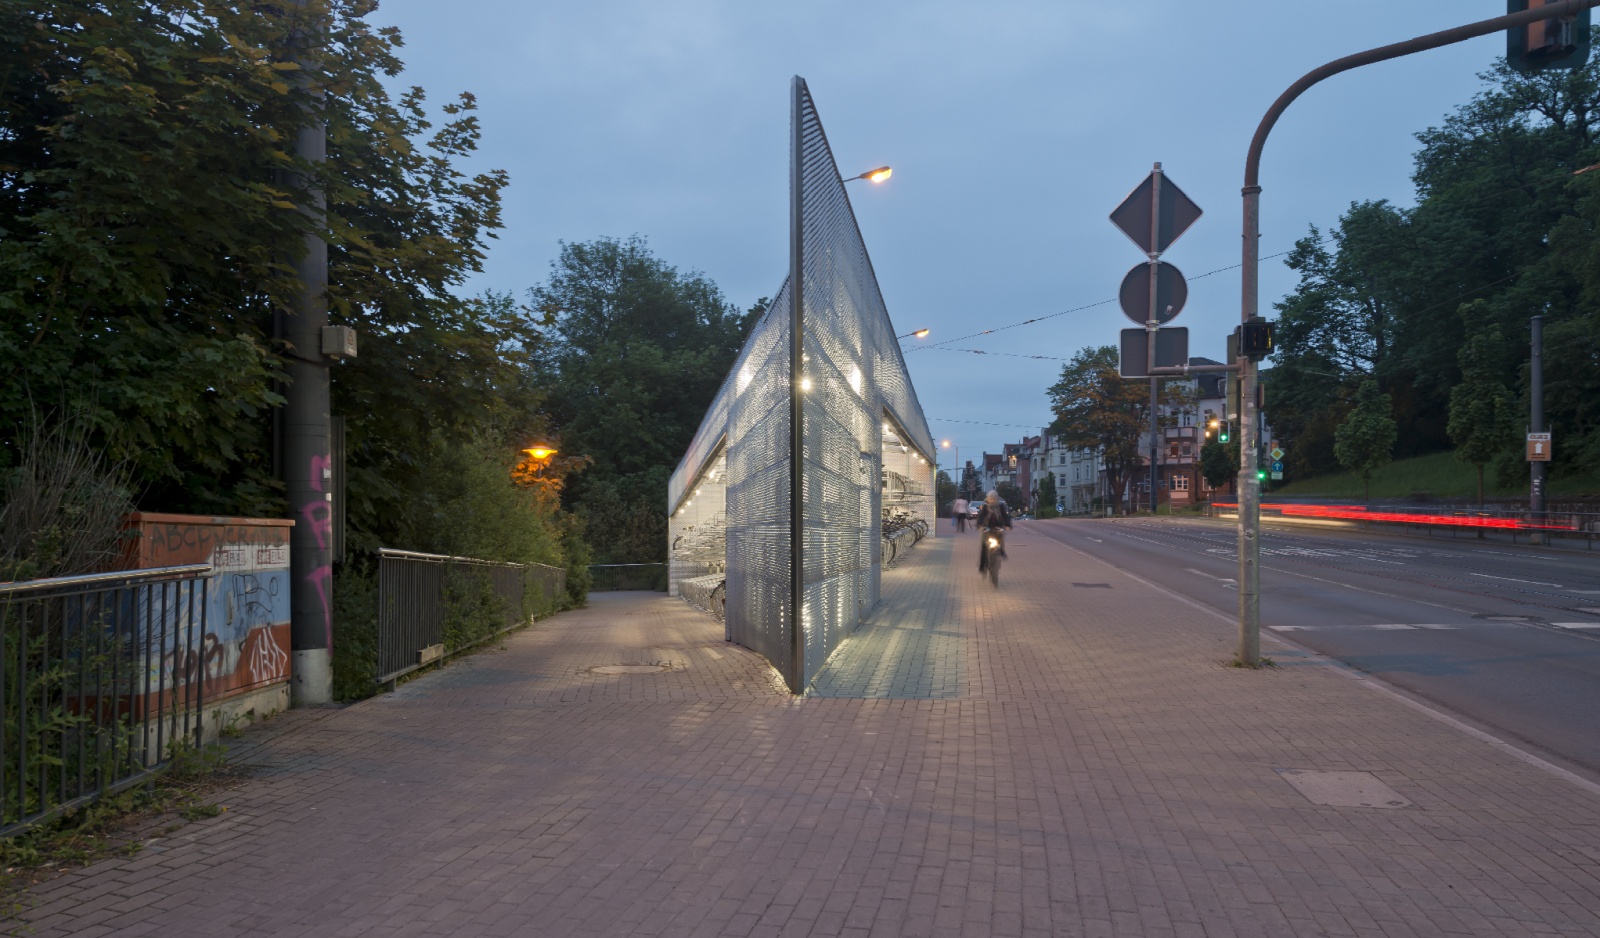 Radhaus - Fahrradstation Erfurt, beleuchtete Spitze von Westen, Bild: Michael Miltzow